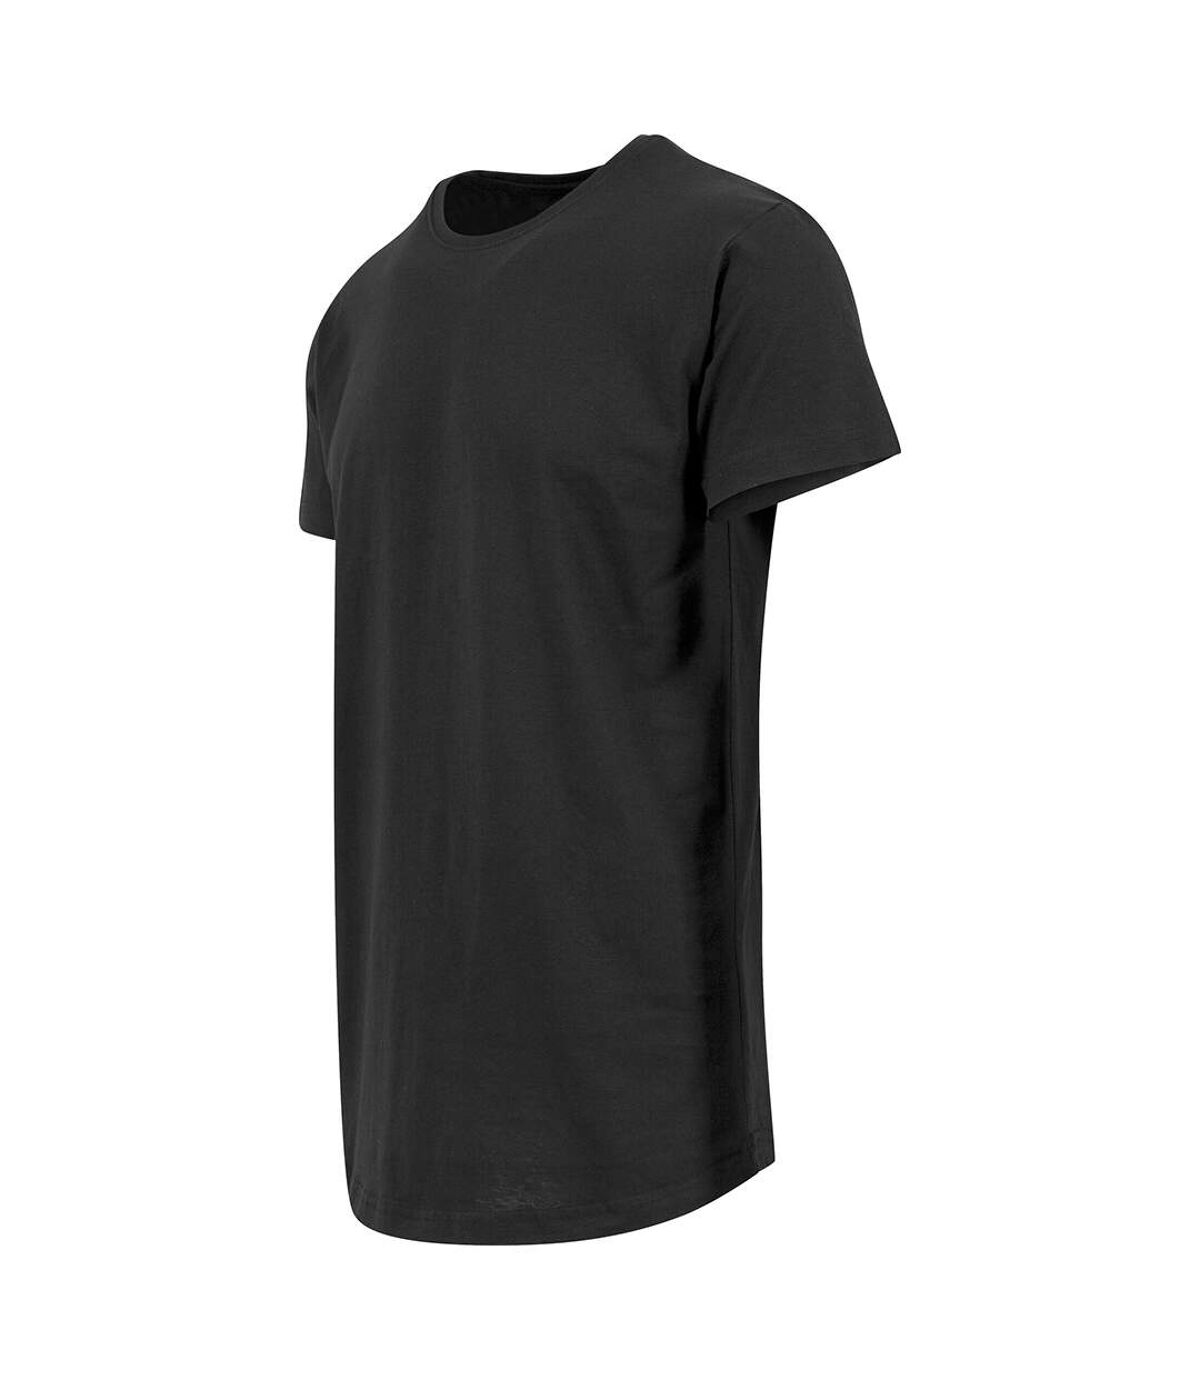 Build Your Brand - T-shirt long à manches courtes - Homme (Noir) - UTRW5671